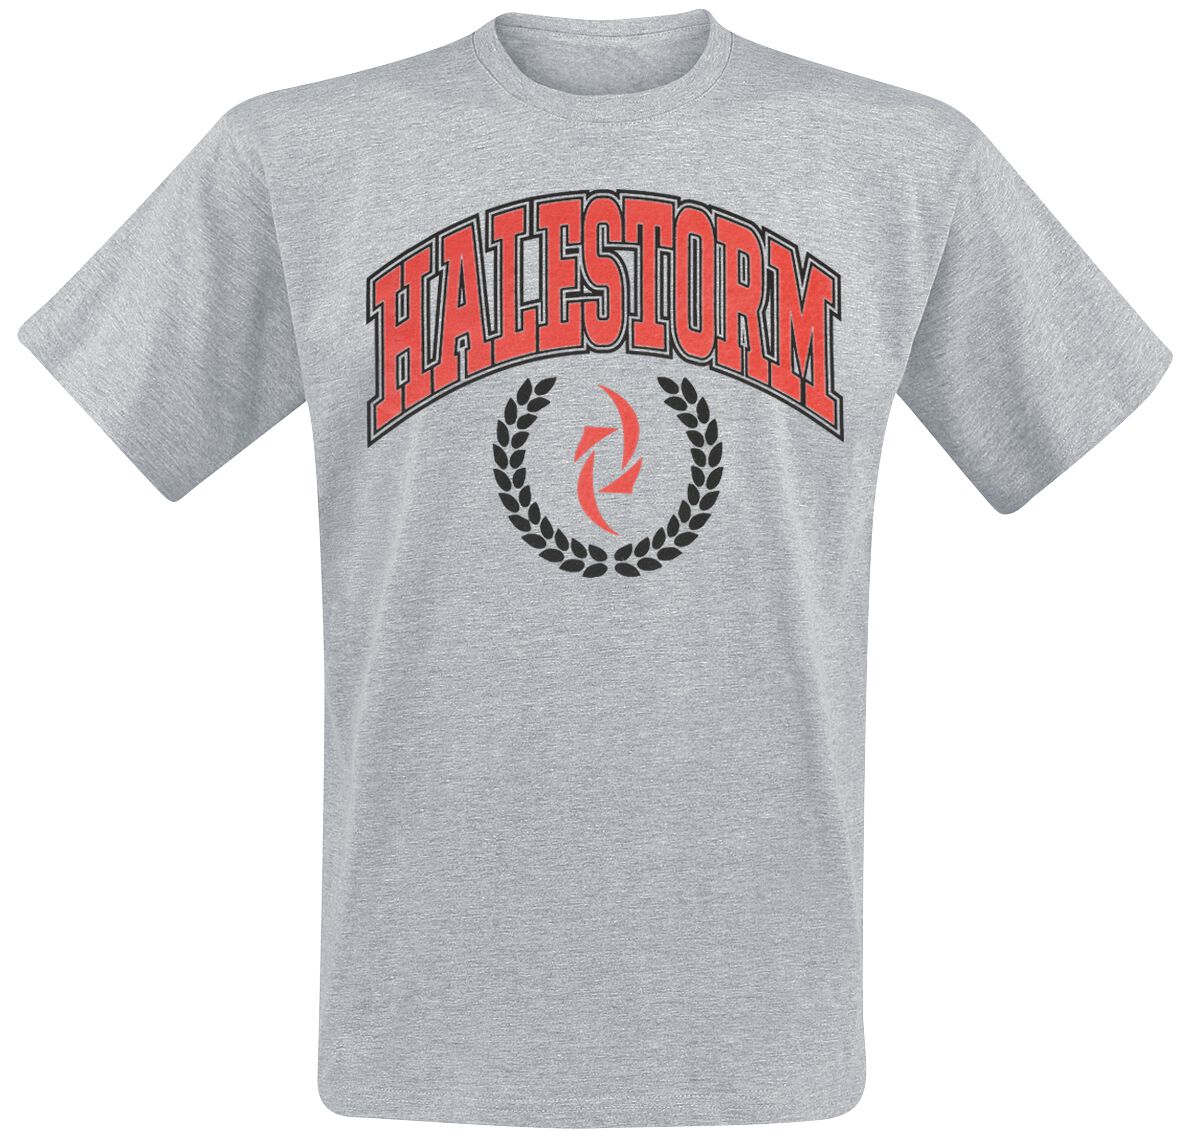 Halestorm T-Shirt - Varsity Logo - S bis XL - für Männer - Größe M - grau meliert  - Lizenziertes Merchandise!